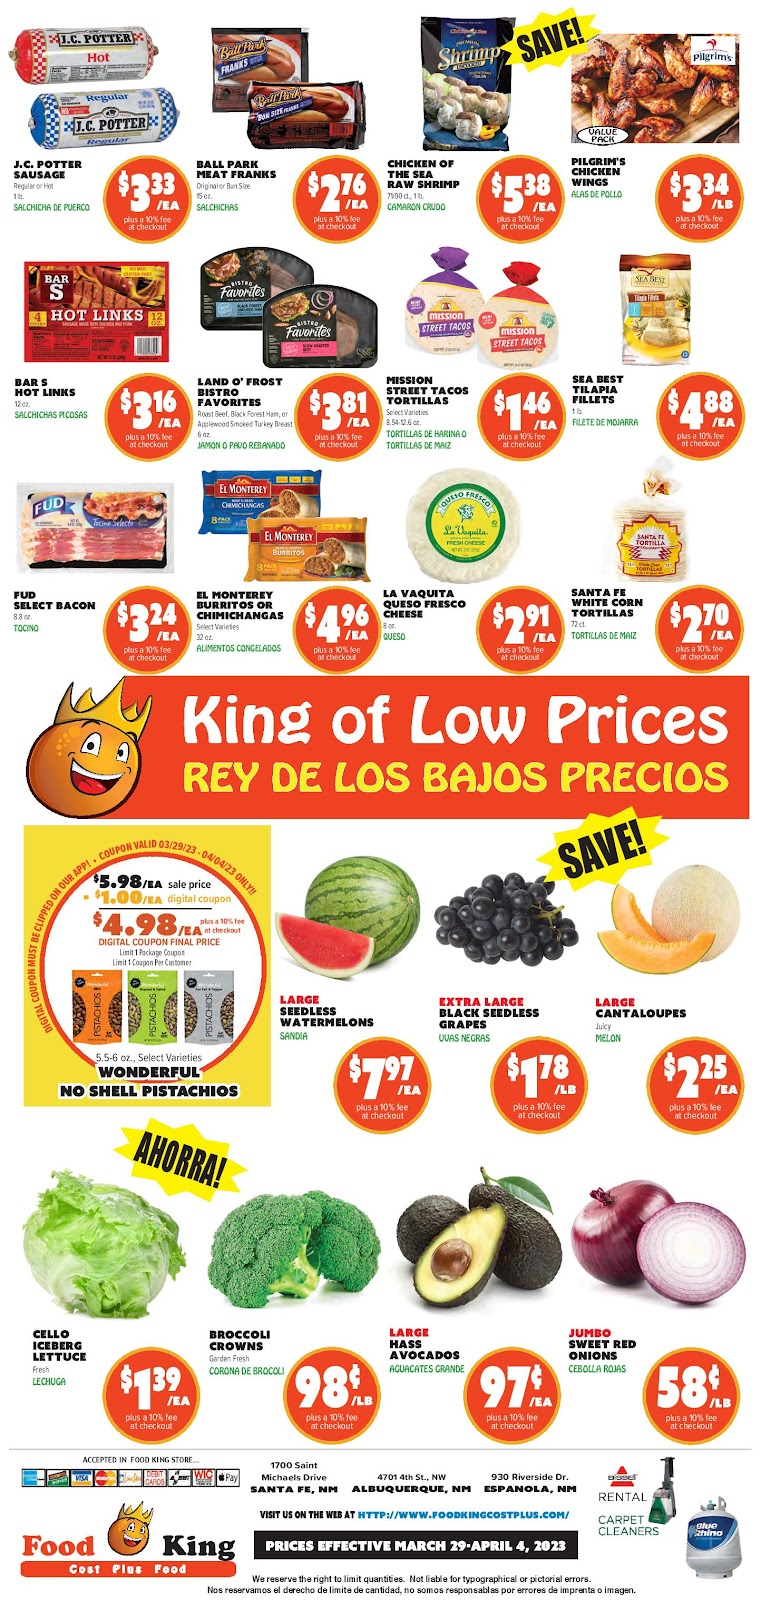 Food King Weekly Ad - 4